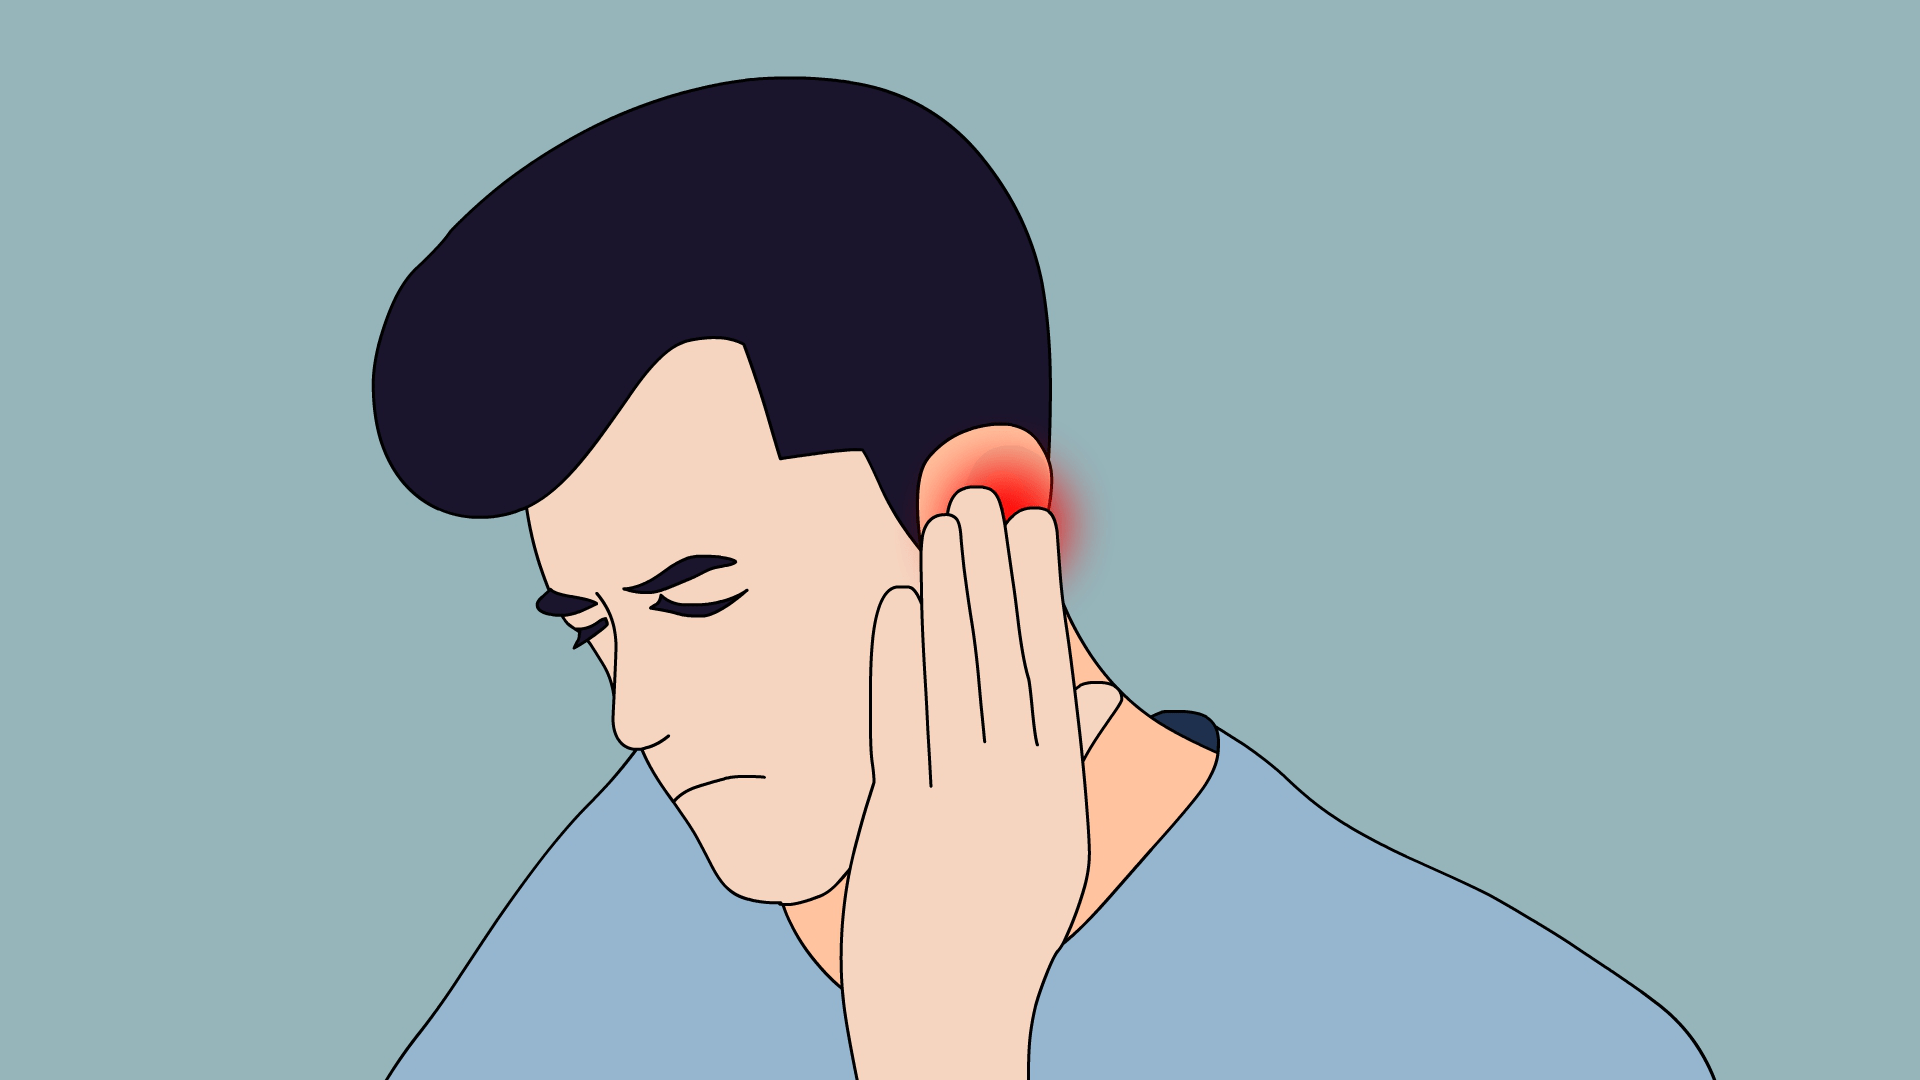 外耳膜受到病菌感染所导致,最初的症状表现为耳部疼痛,耳朵周围肿胀